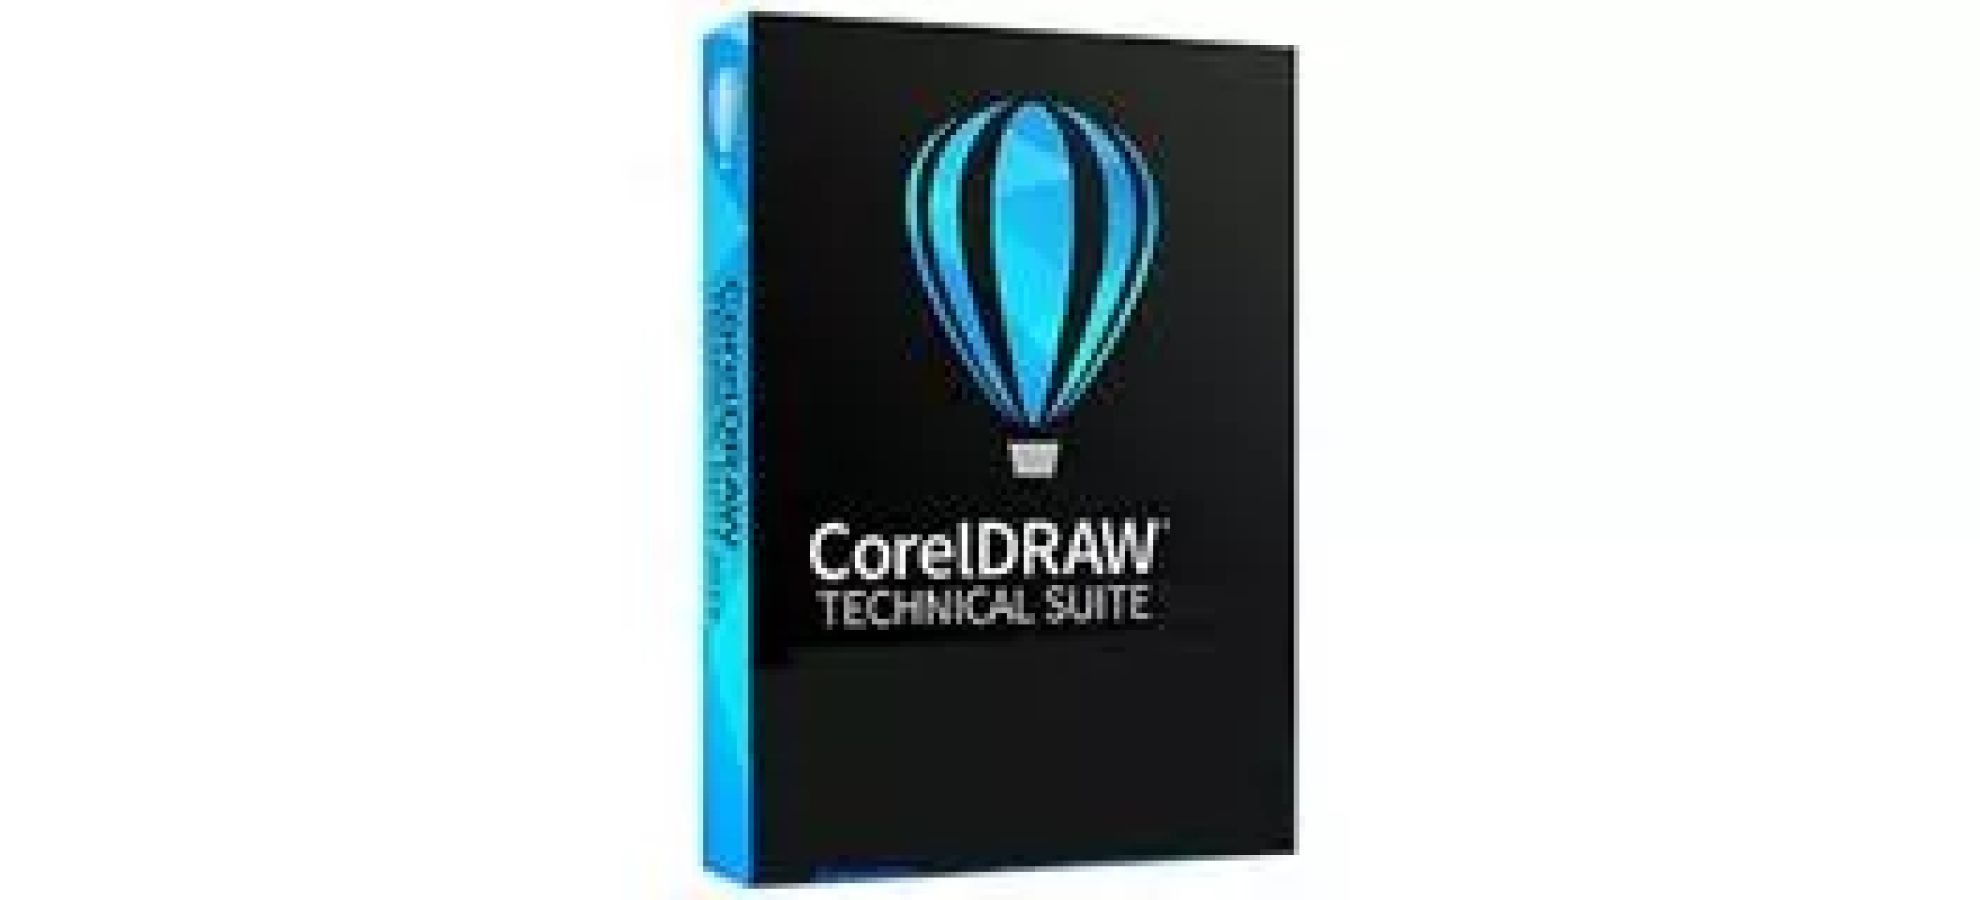 CorelDRAW Technical Suite - hello RSE